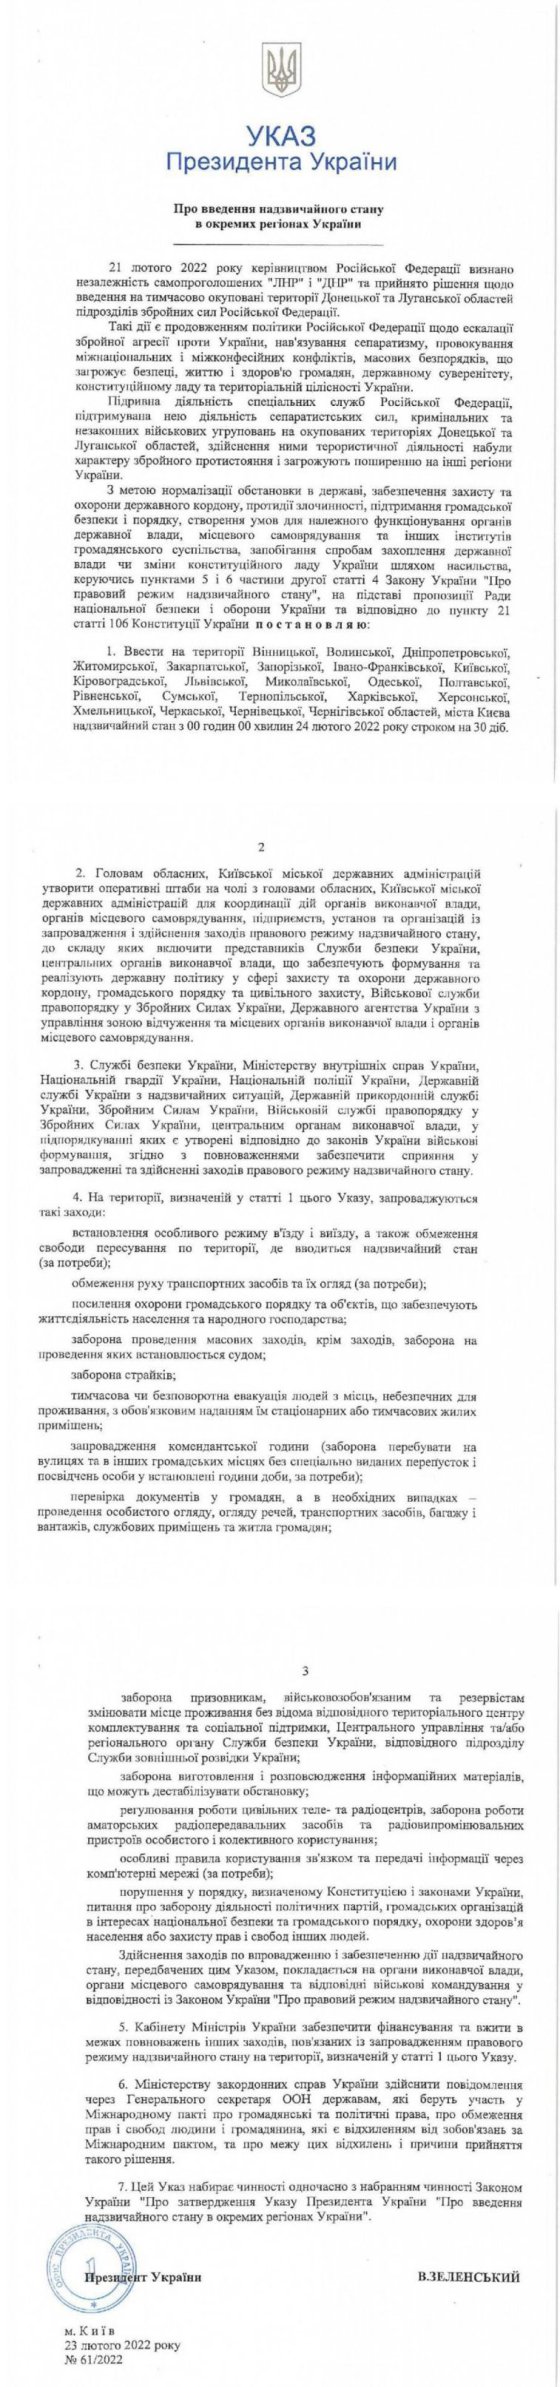 Надзвичайний стан в Україні: з'явився текст указу